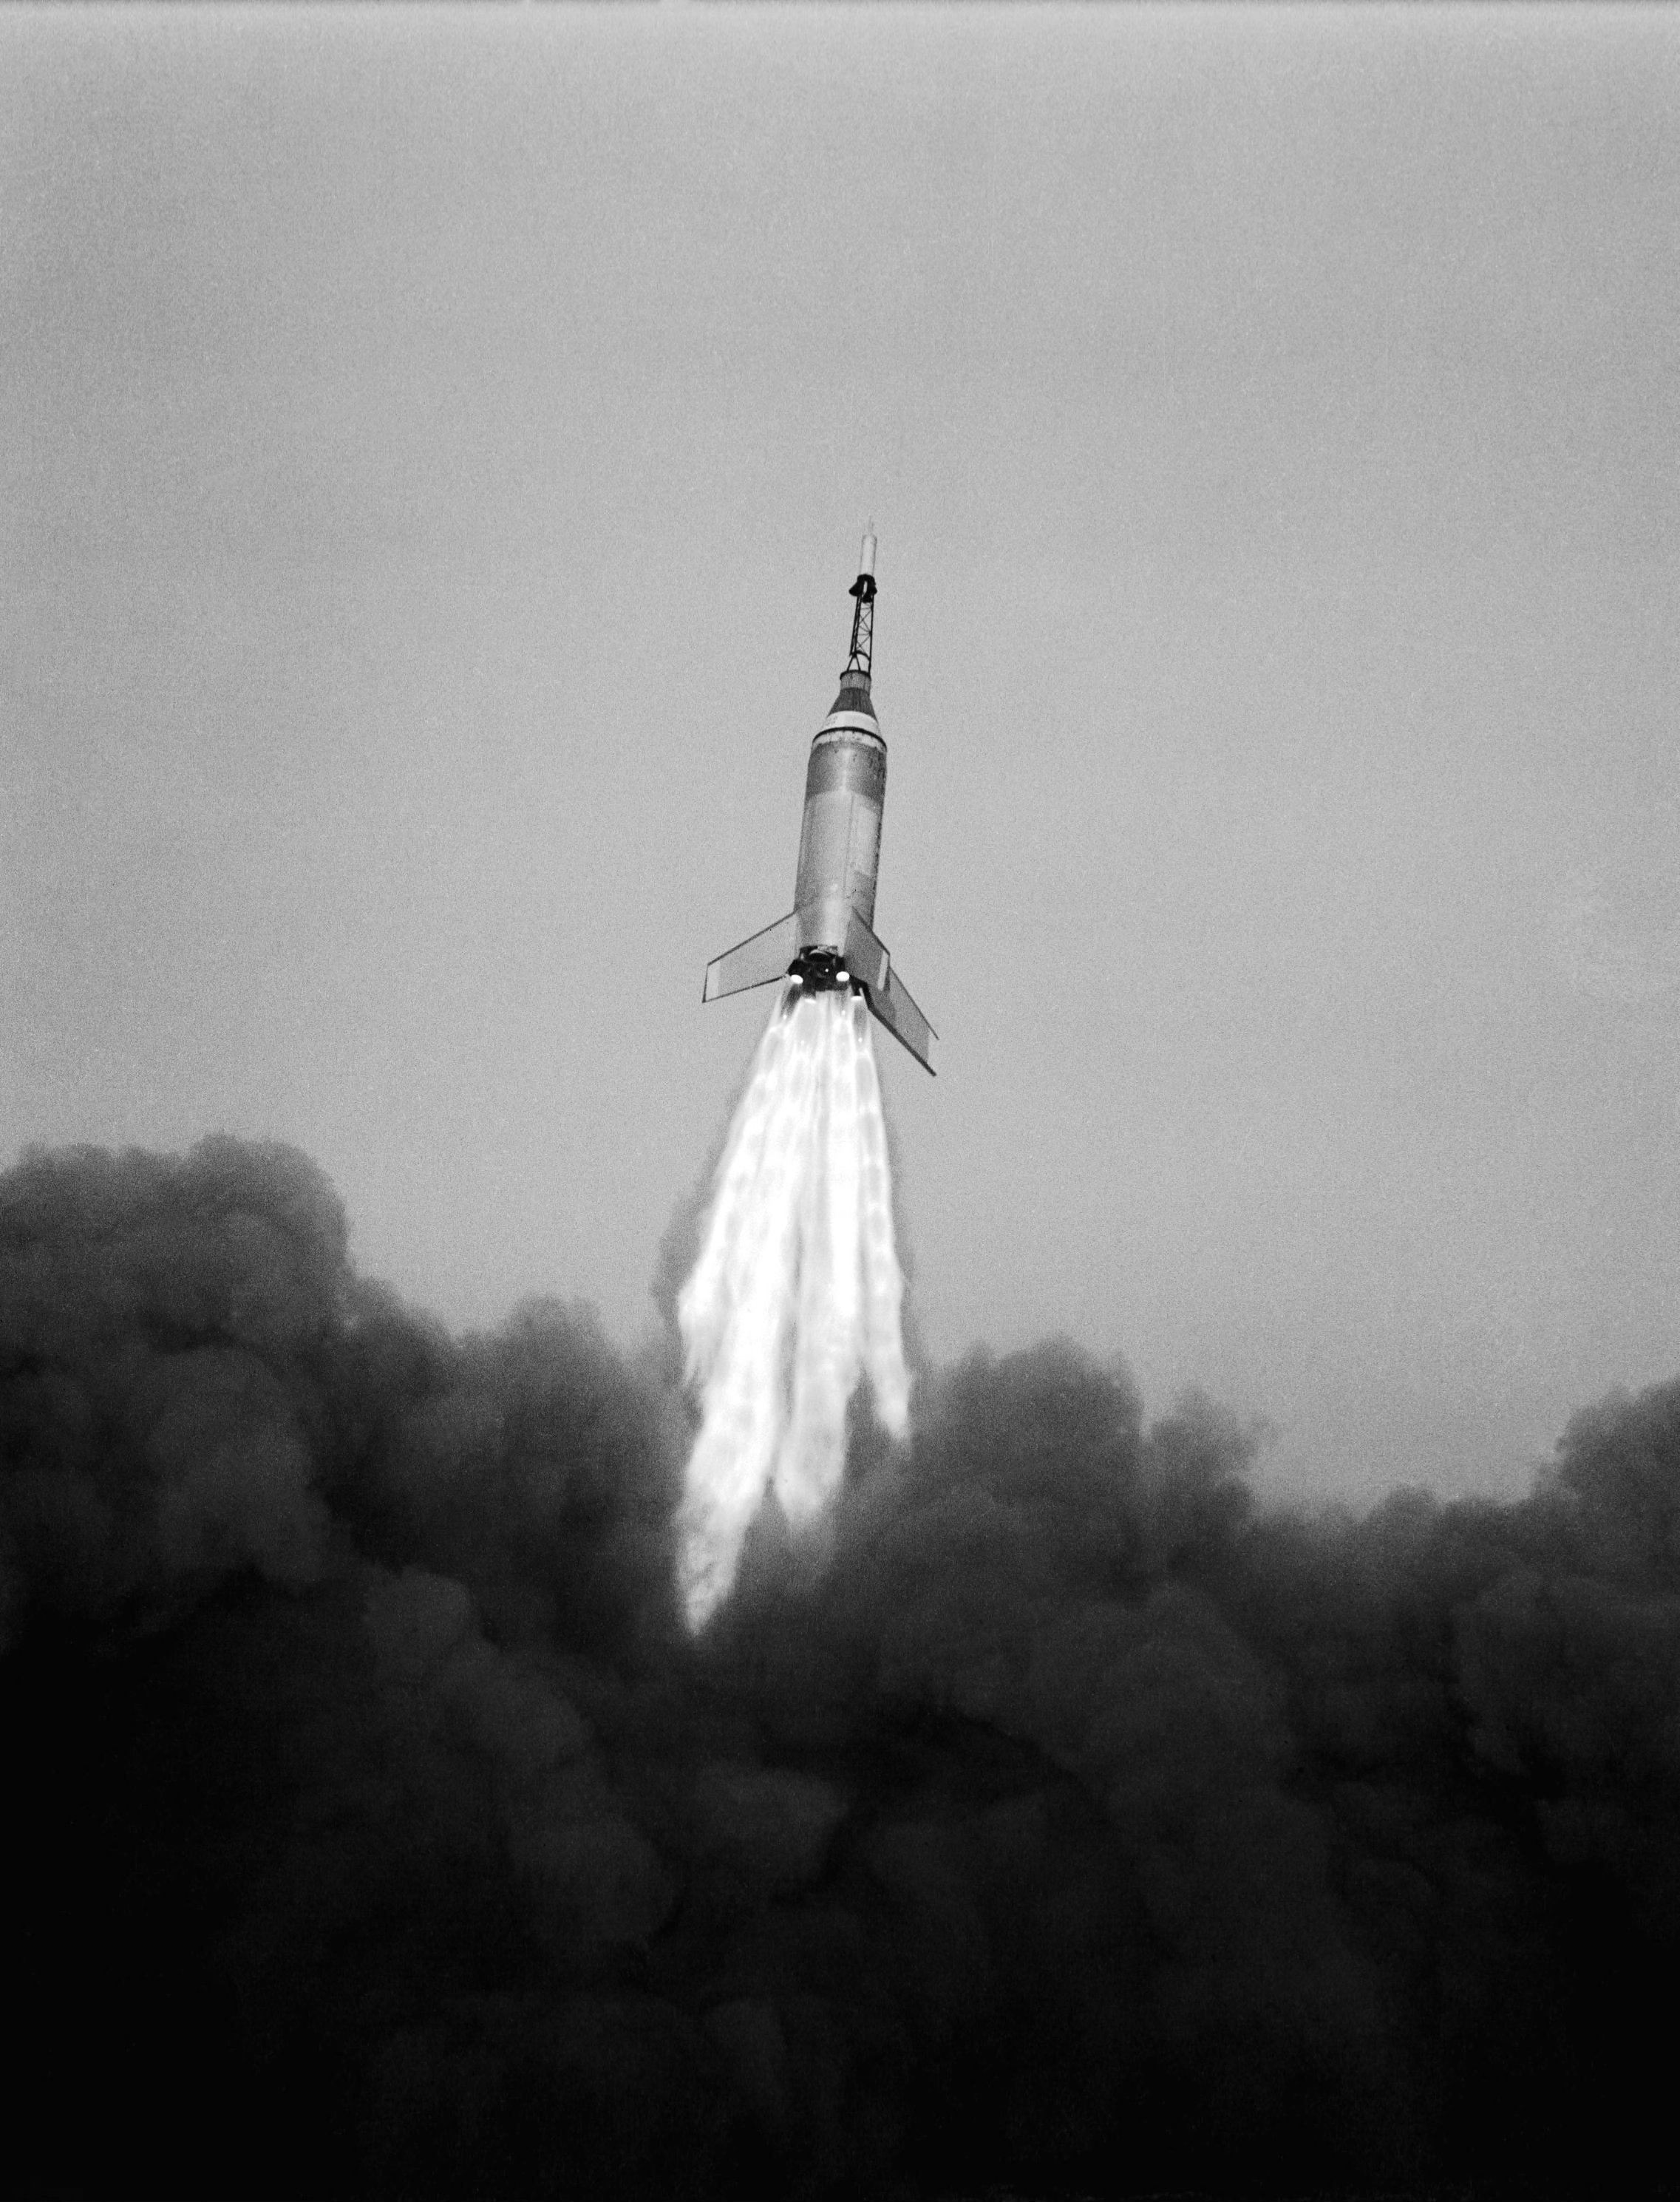 Little_Joe_6_launch_10-4-1959_from_Wallops_Is._Virginia.jpg